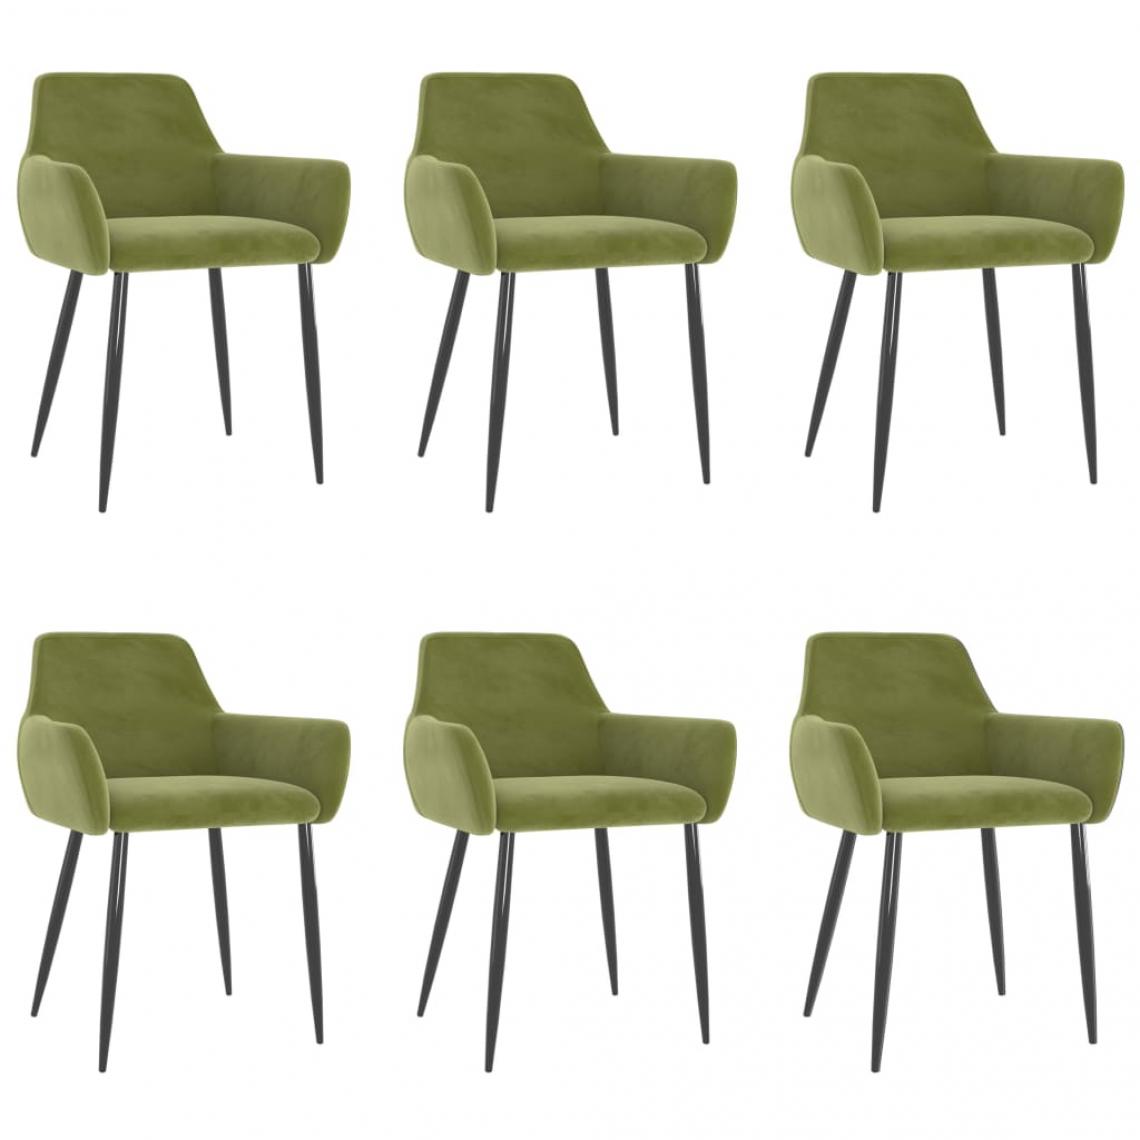 Decoshop26 - Lot de 6 chaises de salle à manger cuisine design moderne velours vert clair CDS022884 - Chaises